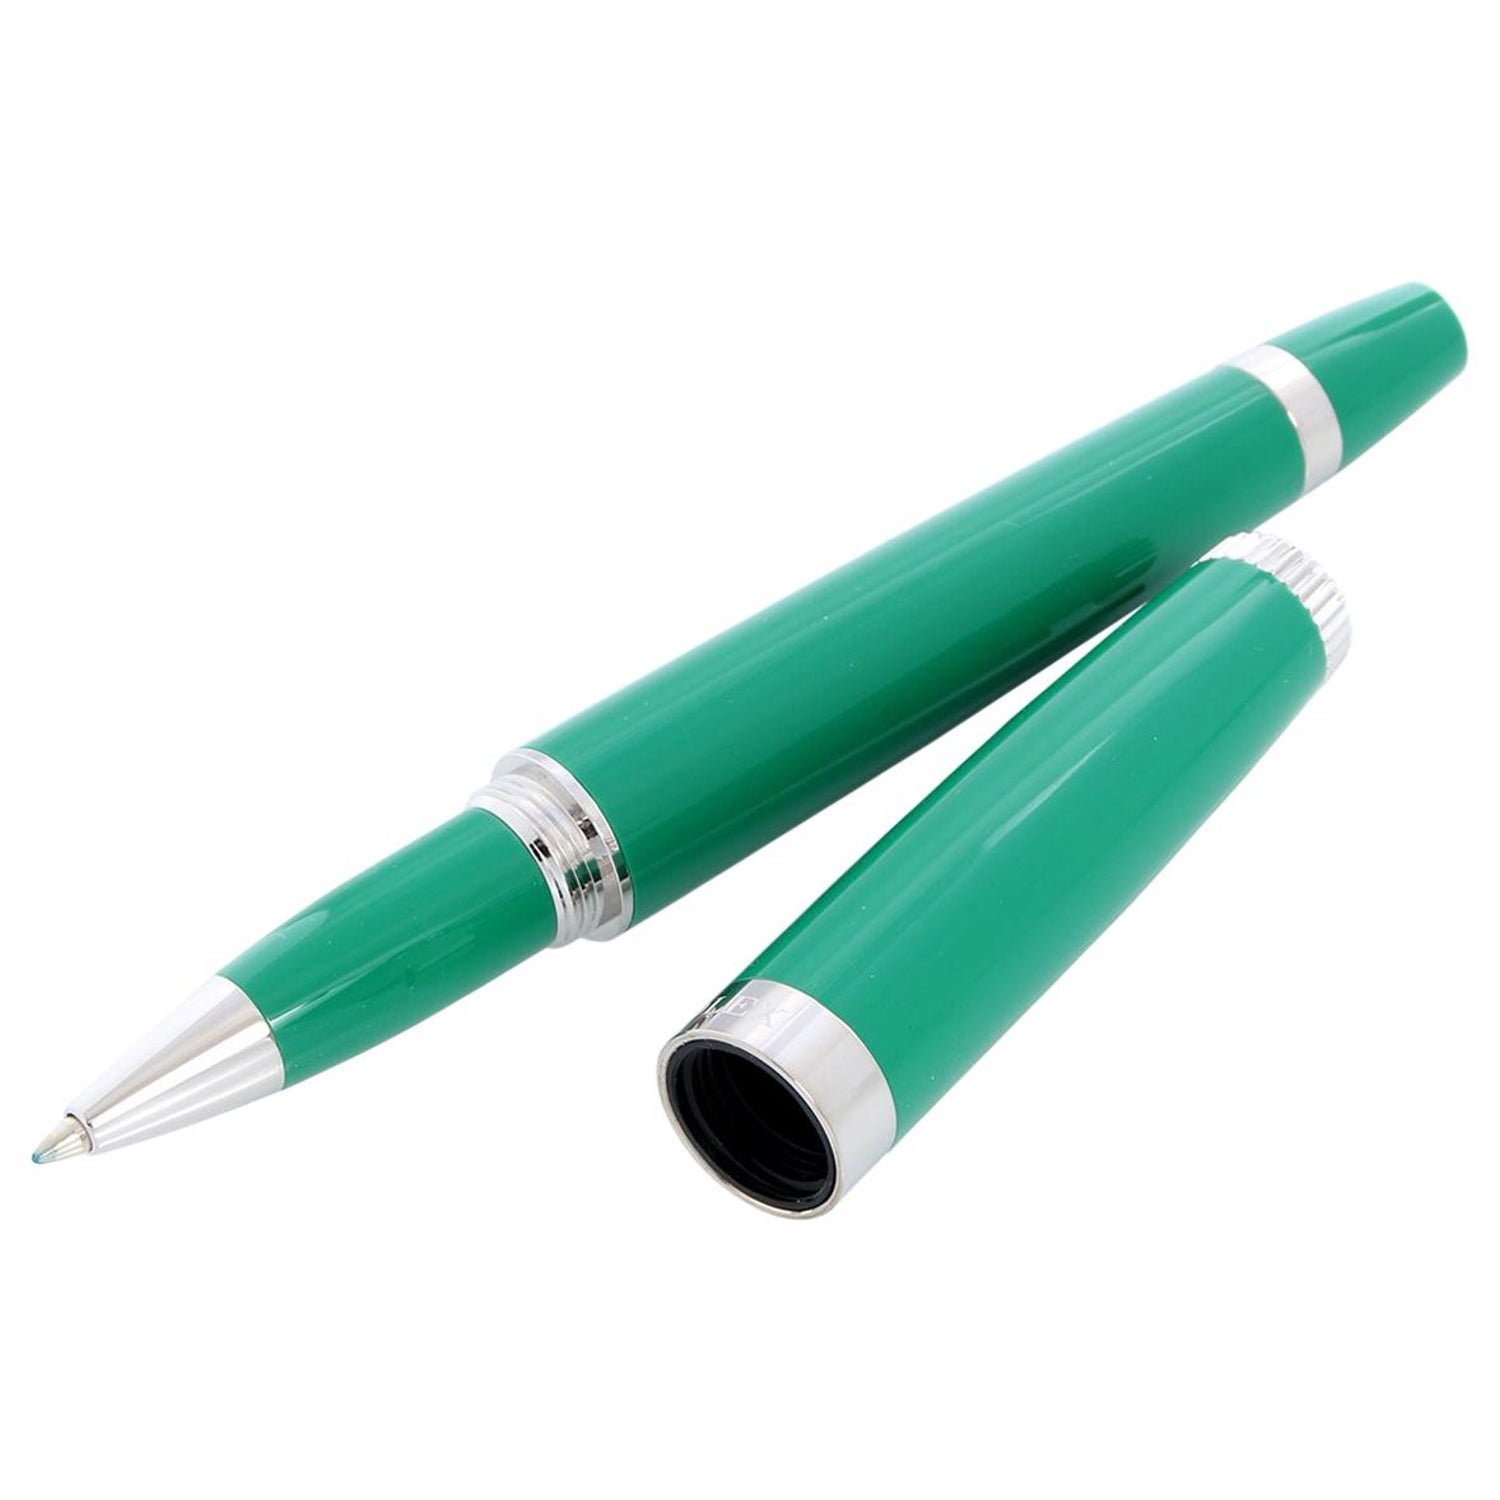 https://a.1stdibscdn.com/rolex-boutique-ballpoint-green-pen-for-sale/j_197/j_194018021685025812228/11674242_master.jpg?width=1500